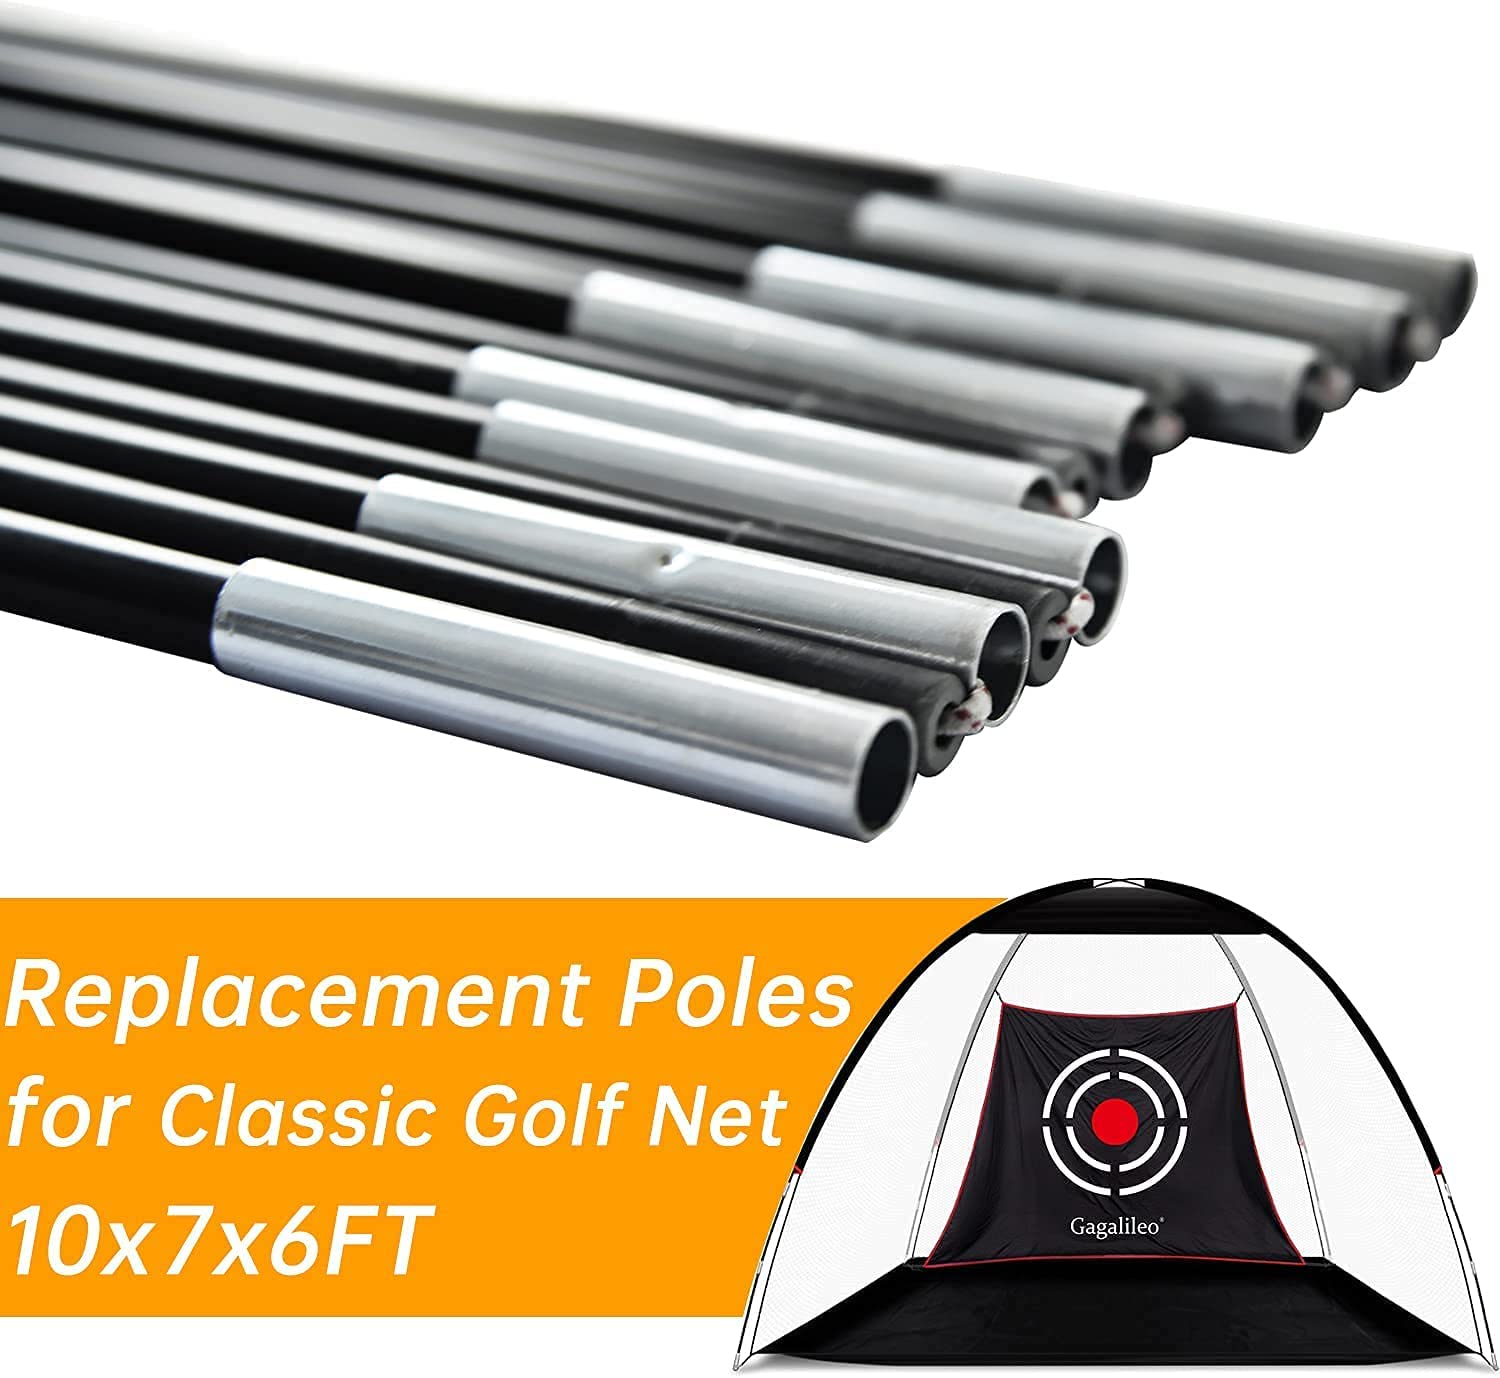 Varillas rectas de repuesto de golf Gagalileo para estilo clásico de red de golf de 10 x 7 x 6 pies, varillas de repuesto de fibra de vidrio, 2 uds, GG-0003P